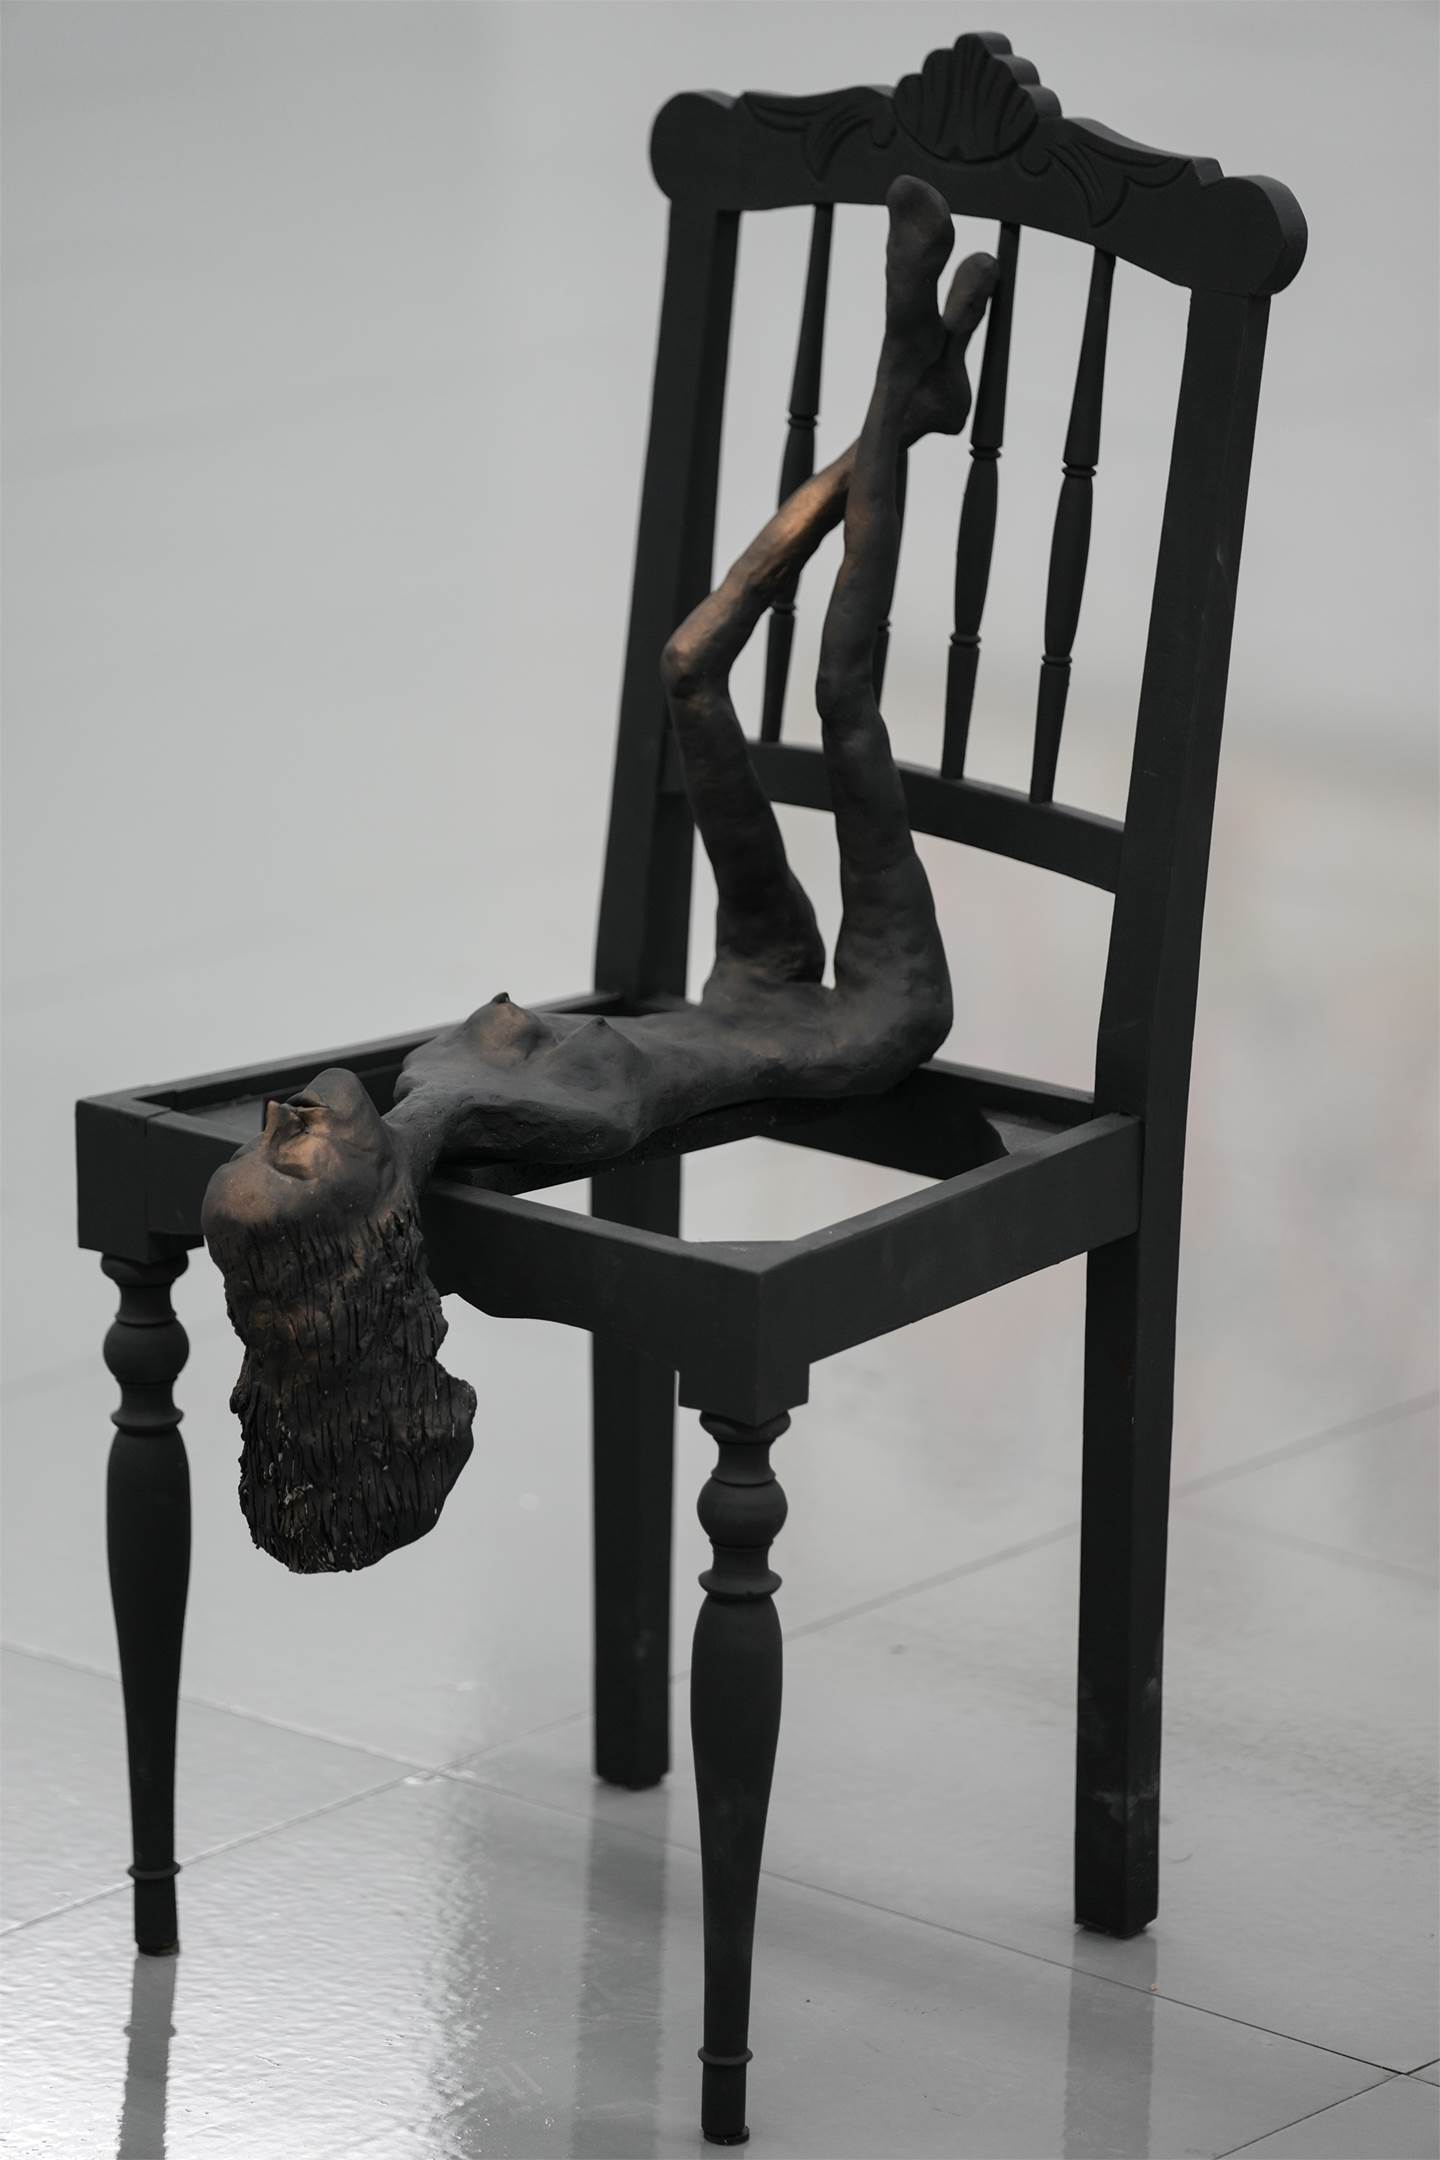 A puta da cadeira, original Resumen Técnica Mixta Escultura de Marcia Ruberti